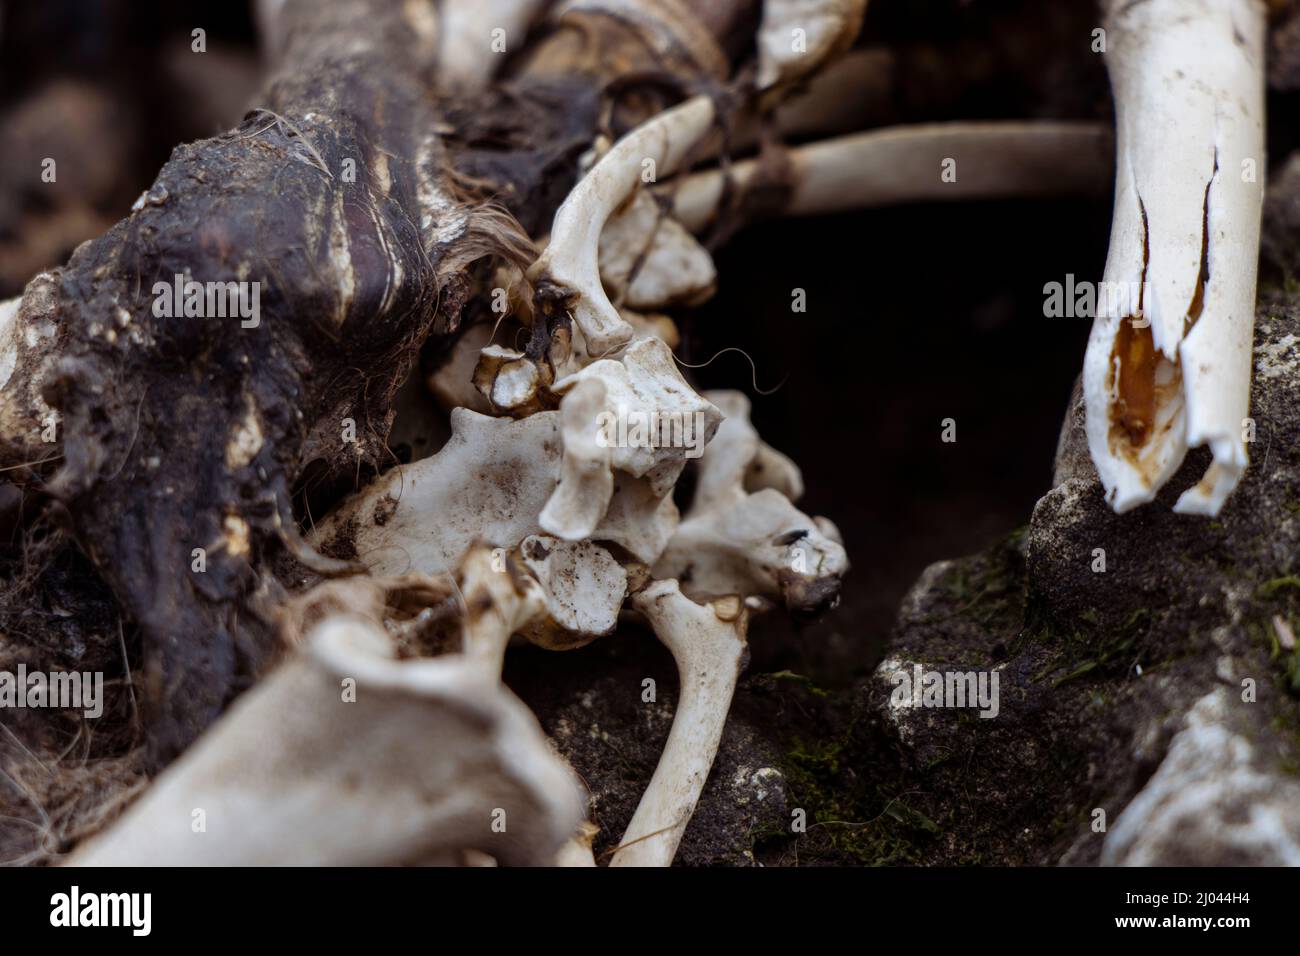 Squelette exposé et os cassés d'une carcasse de renard Banque D'Images